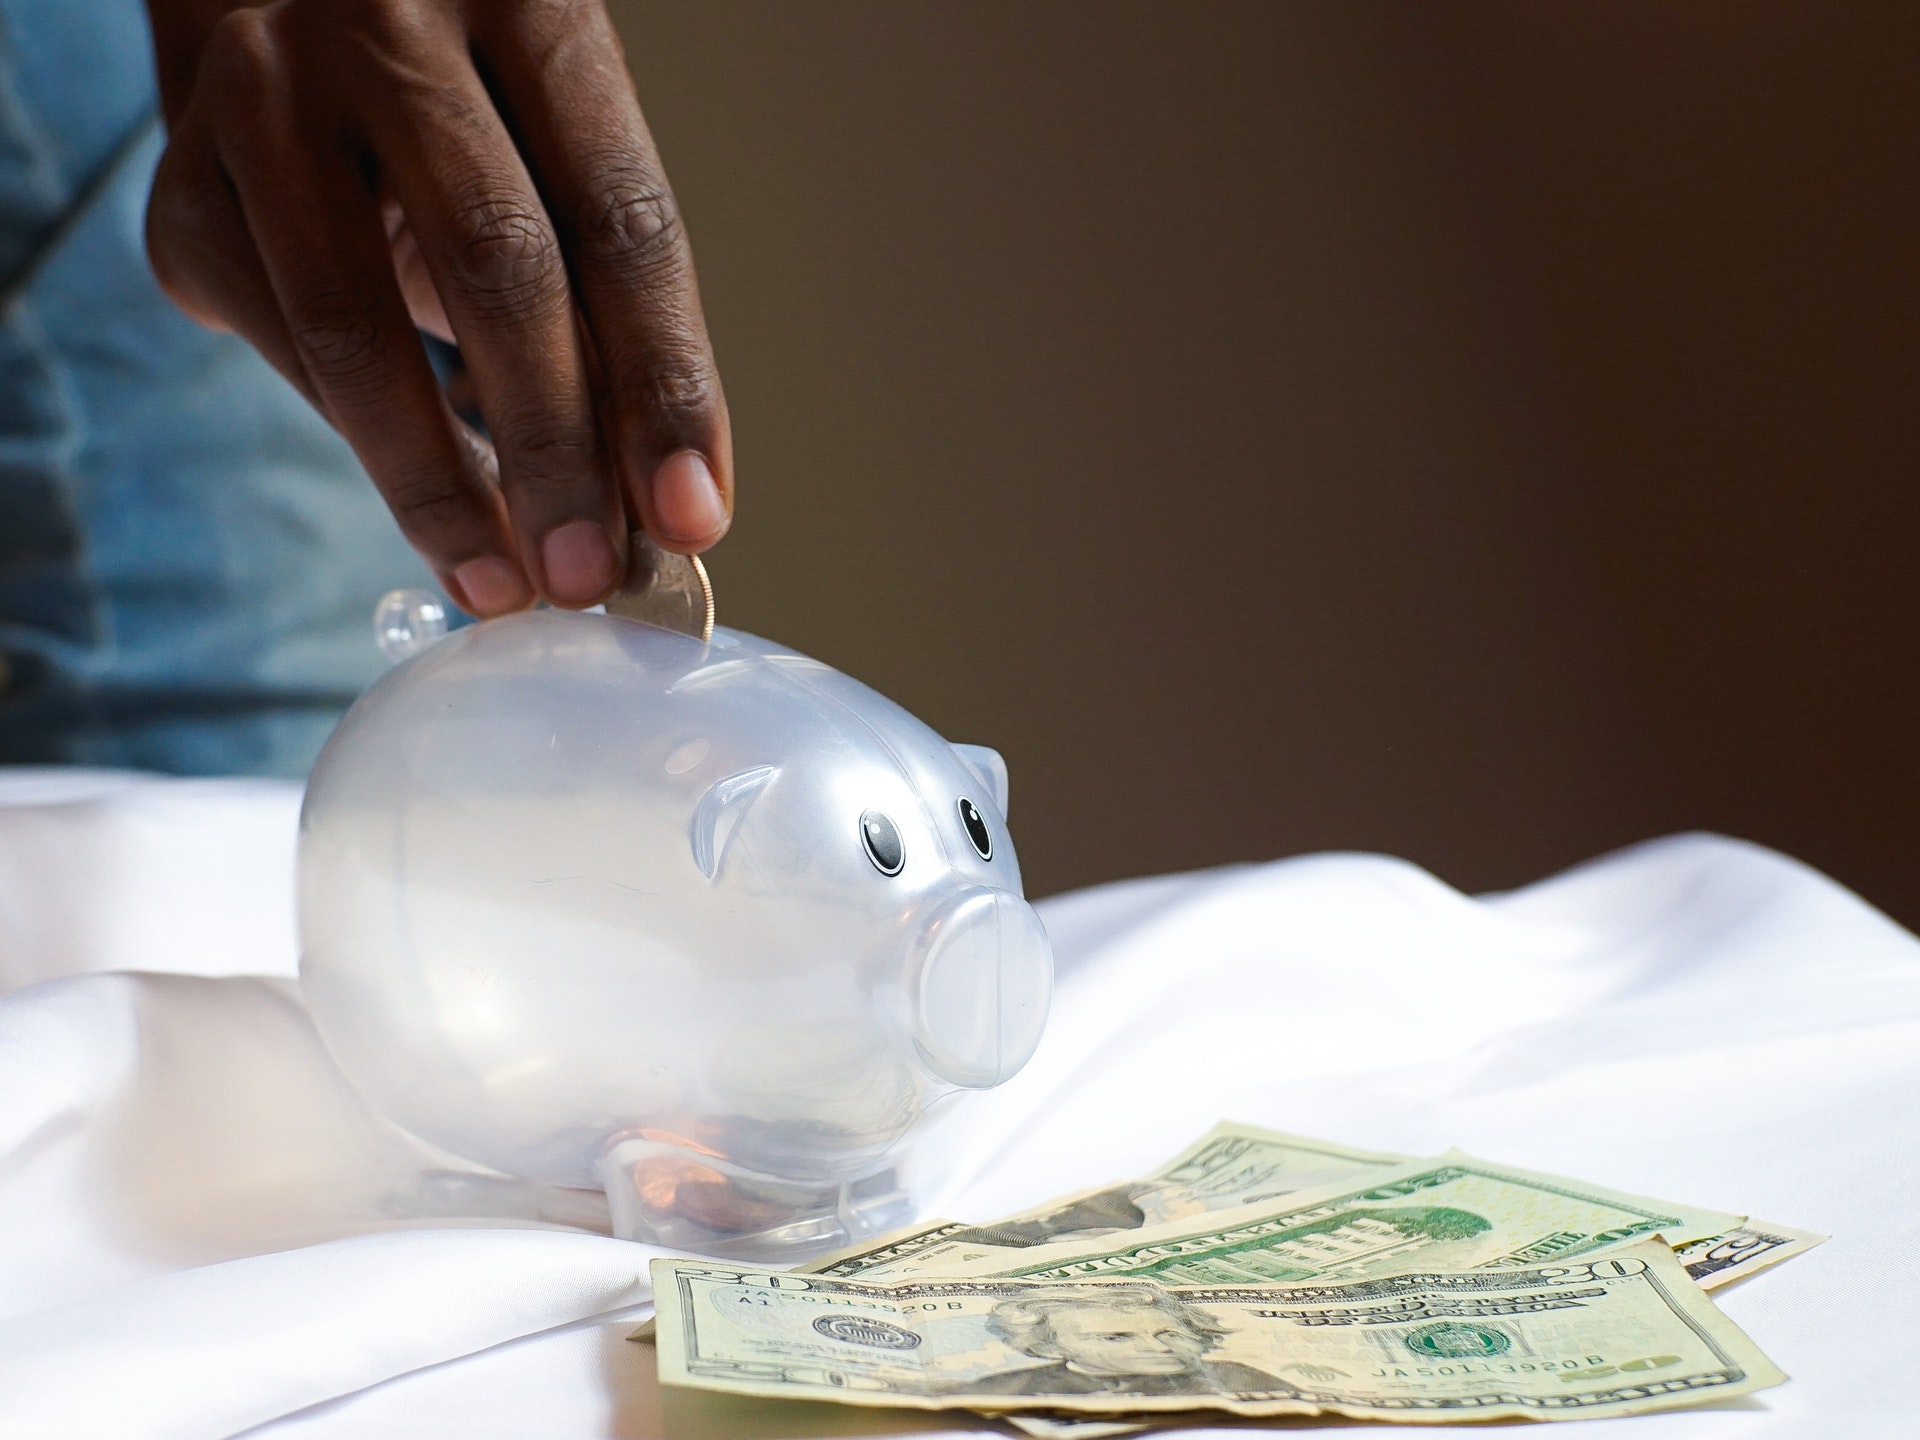 Mão colocando moedas em um cofre em formato de porco.  Imagem ilustrativa do texto sobre ideias de negócio próprio com baixo investimento.